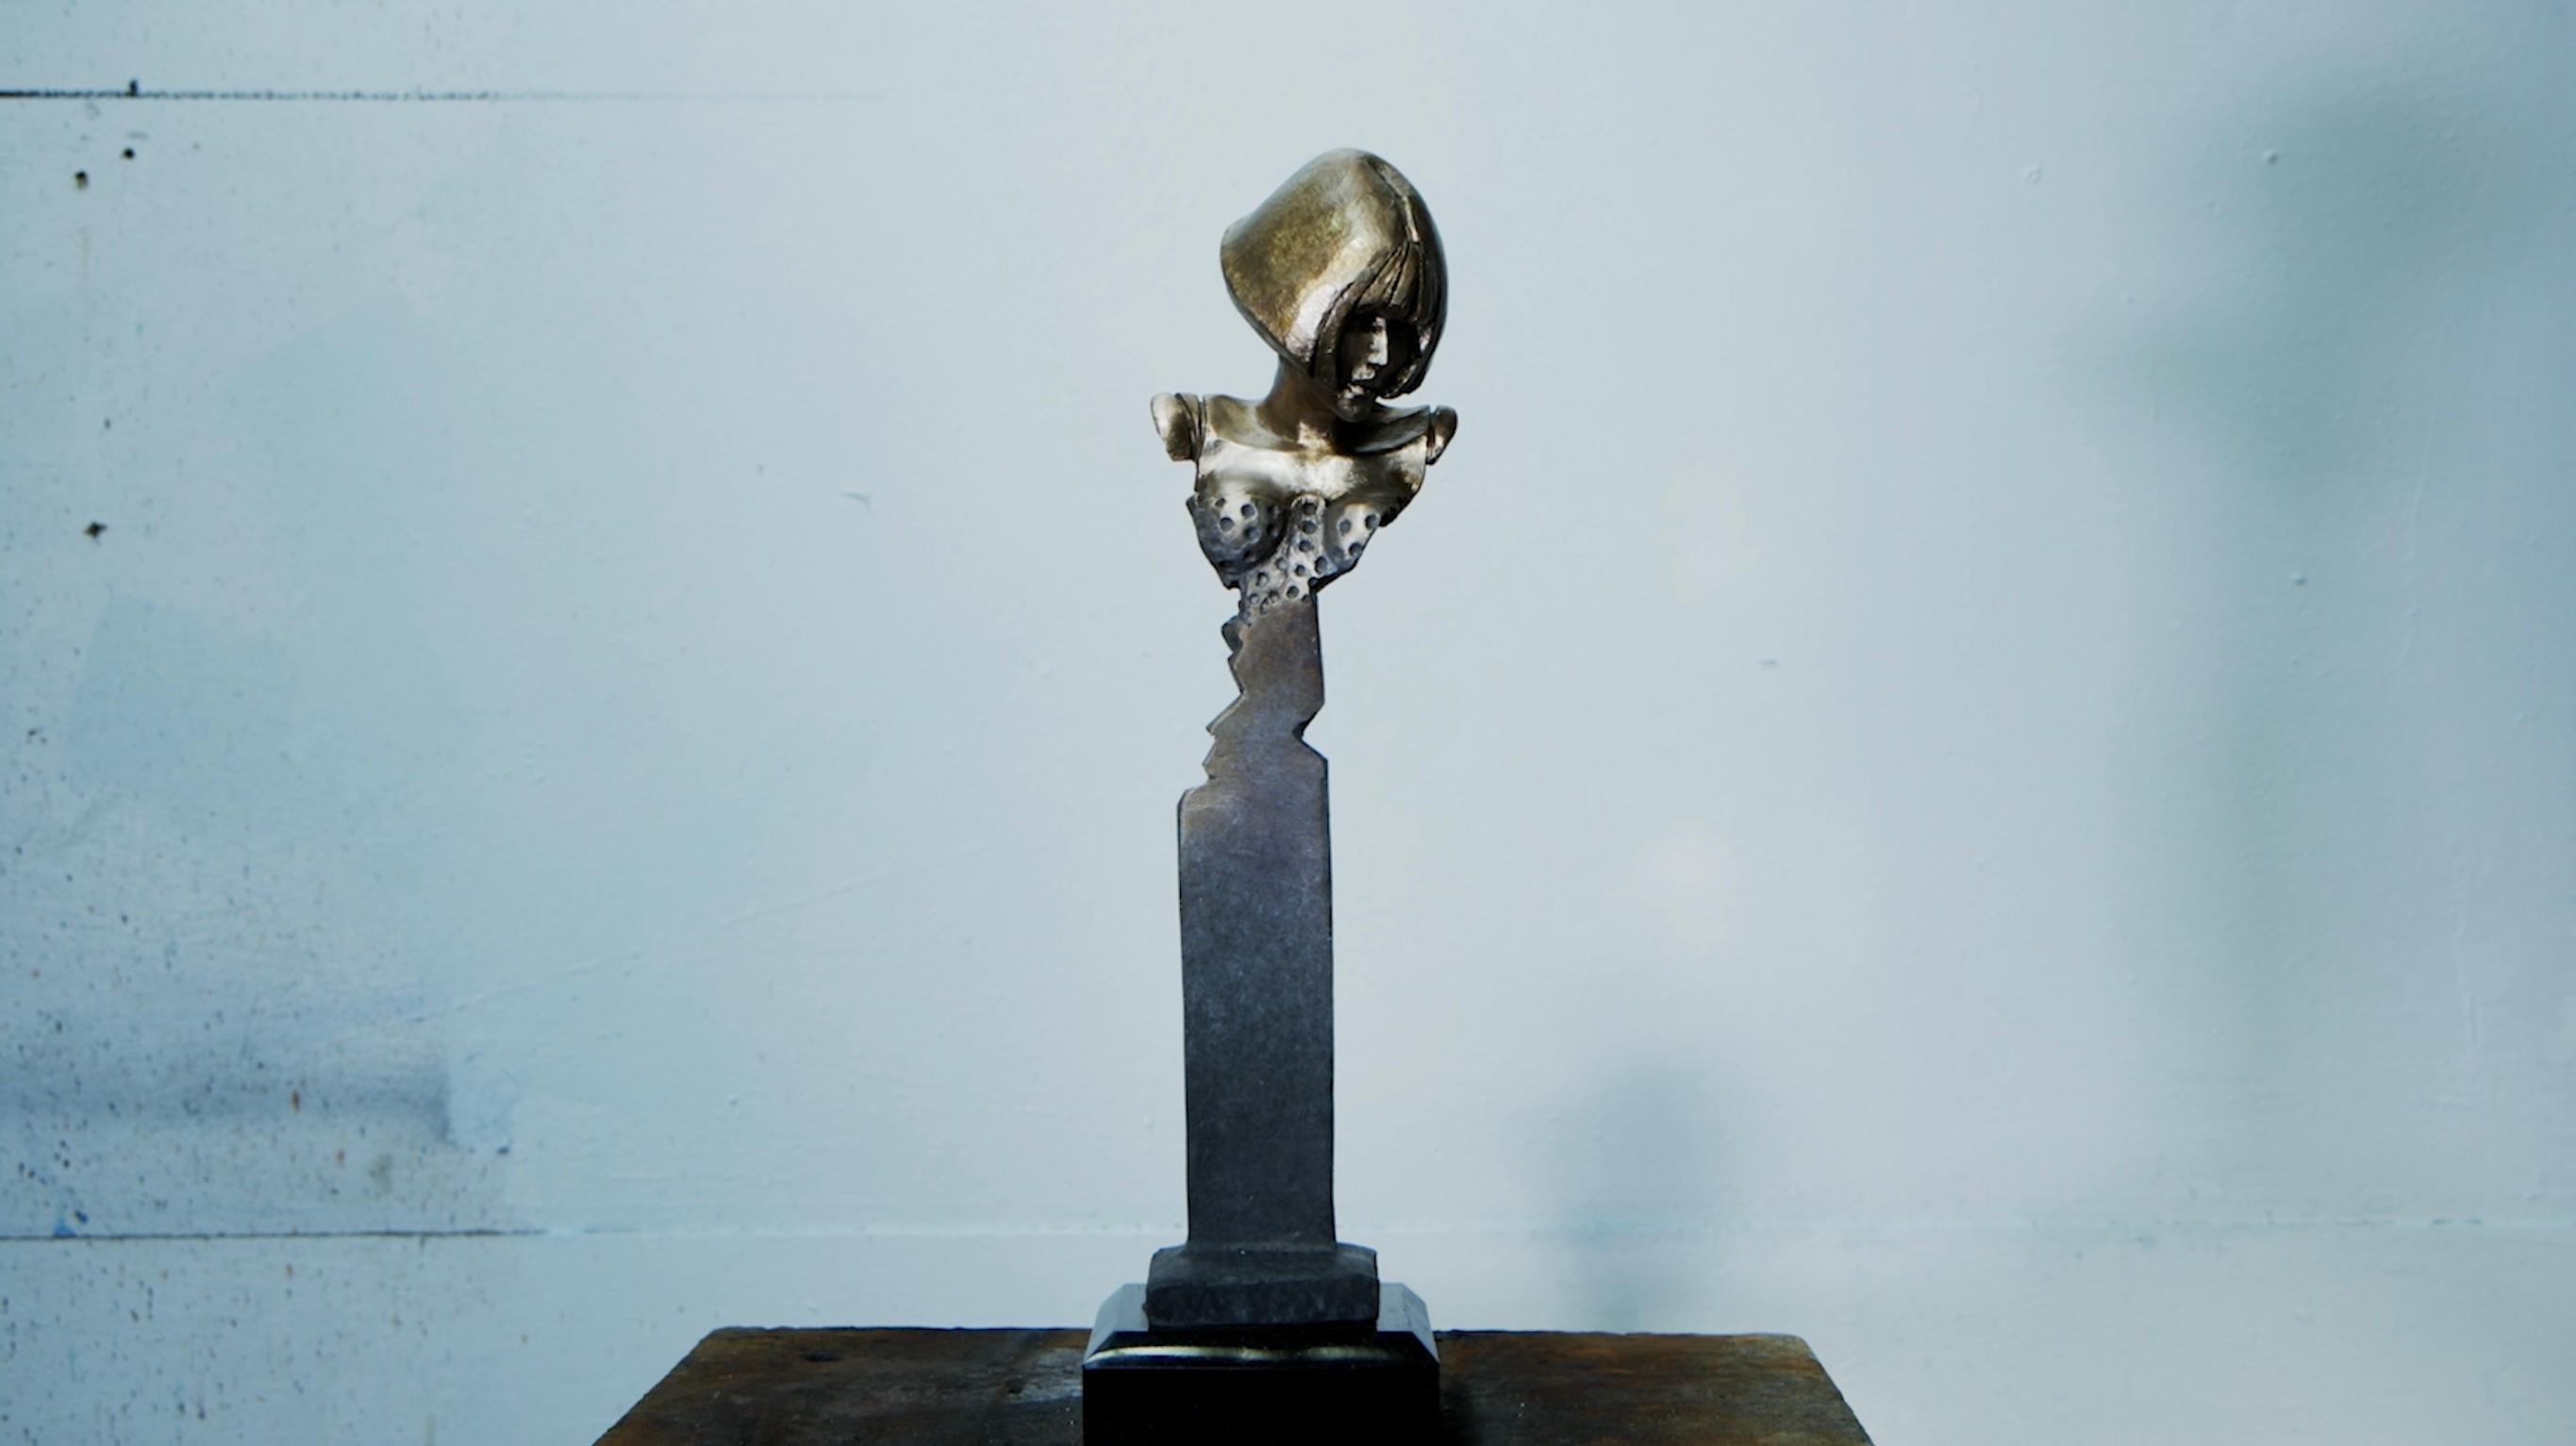 Zeitgenössische Miniatur-Bronze-Skulptur auf Granitsockel – Sculpture von Stephen Glassborow